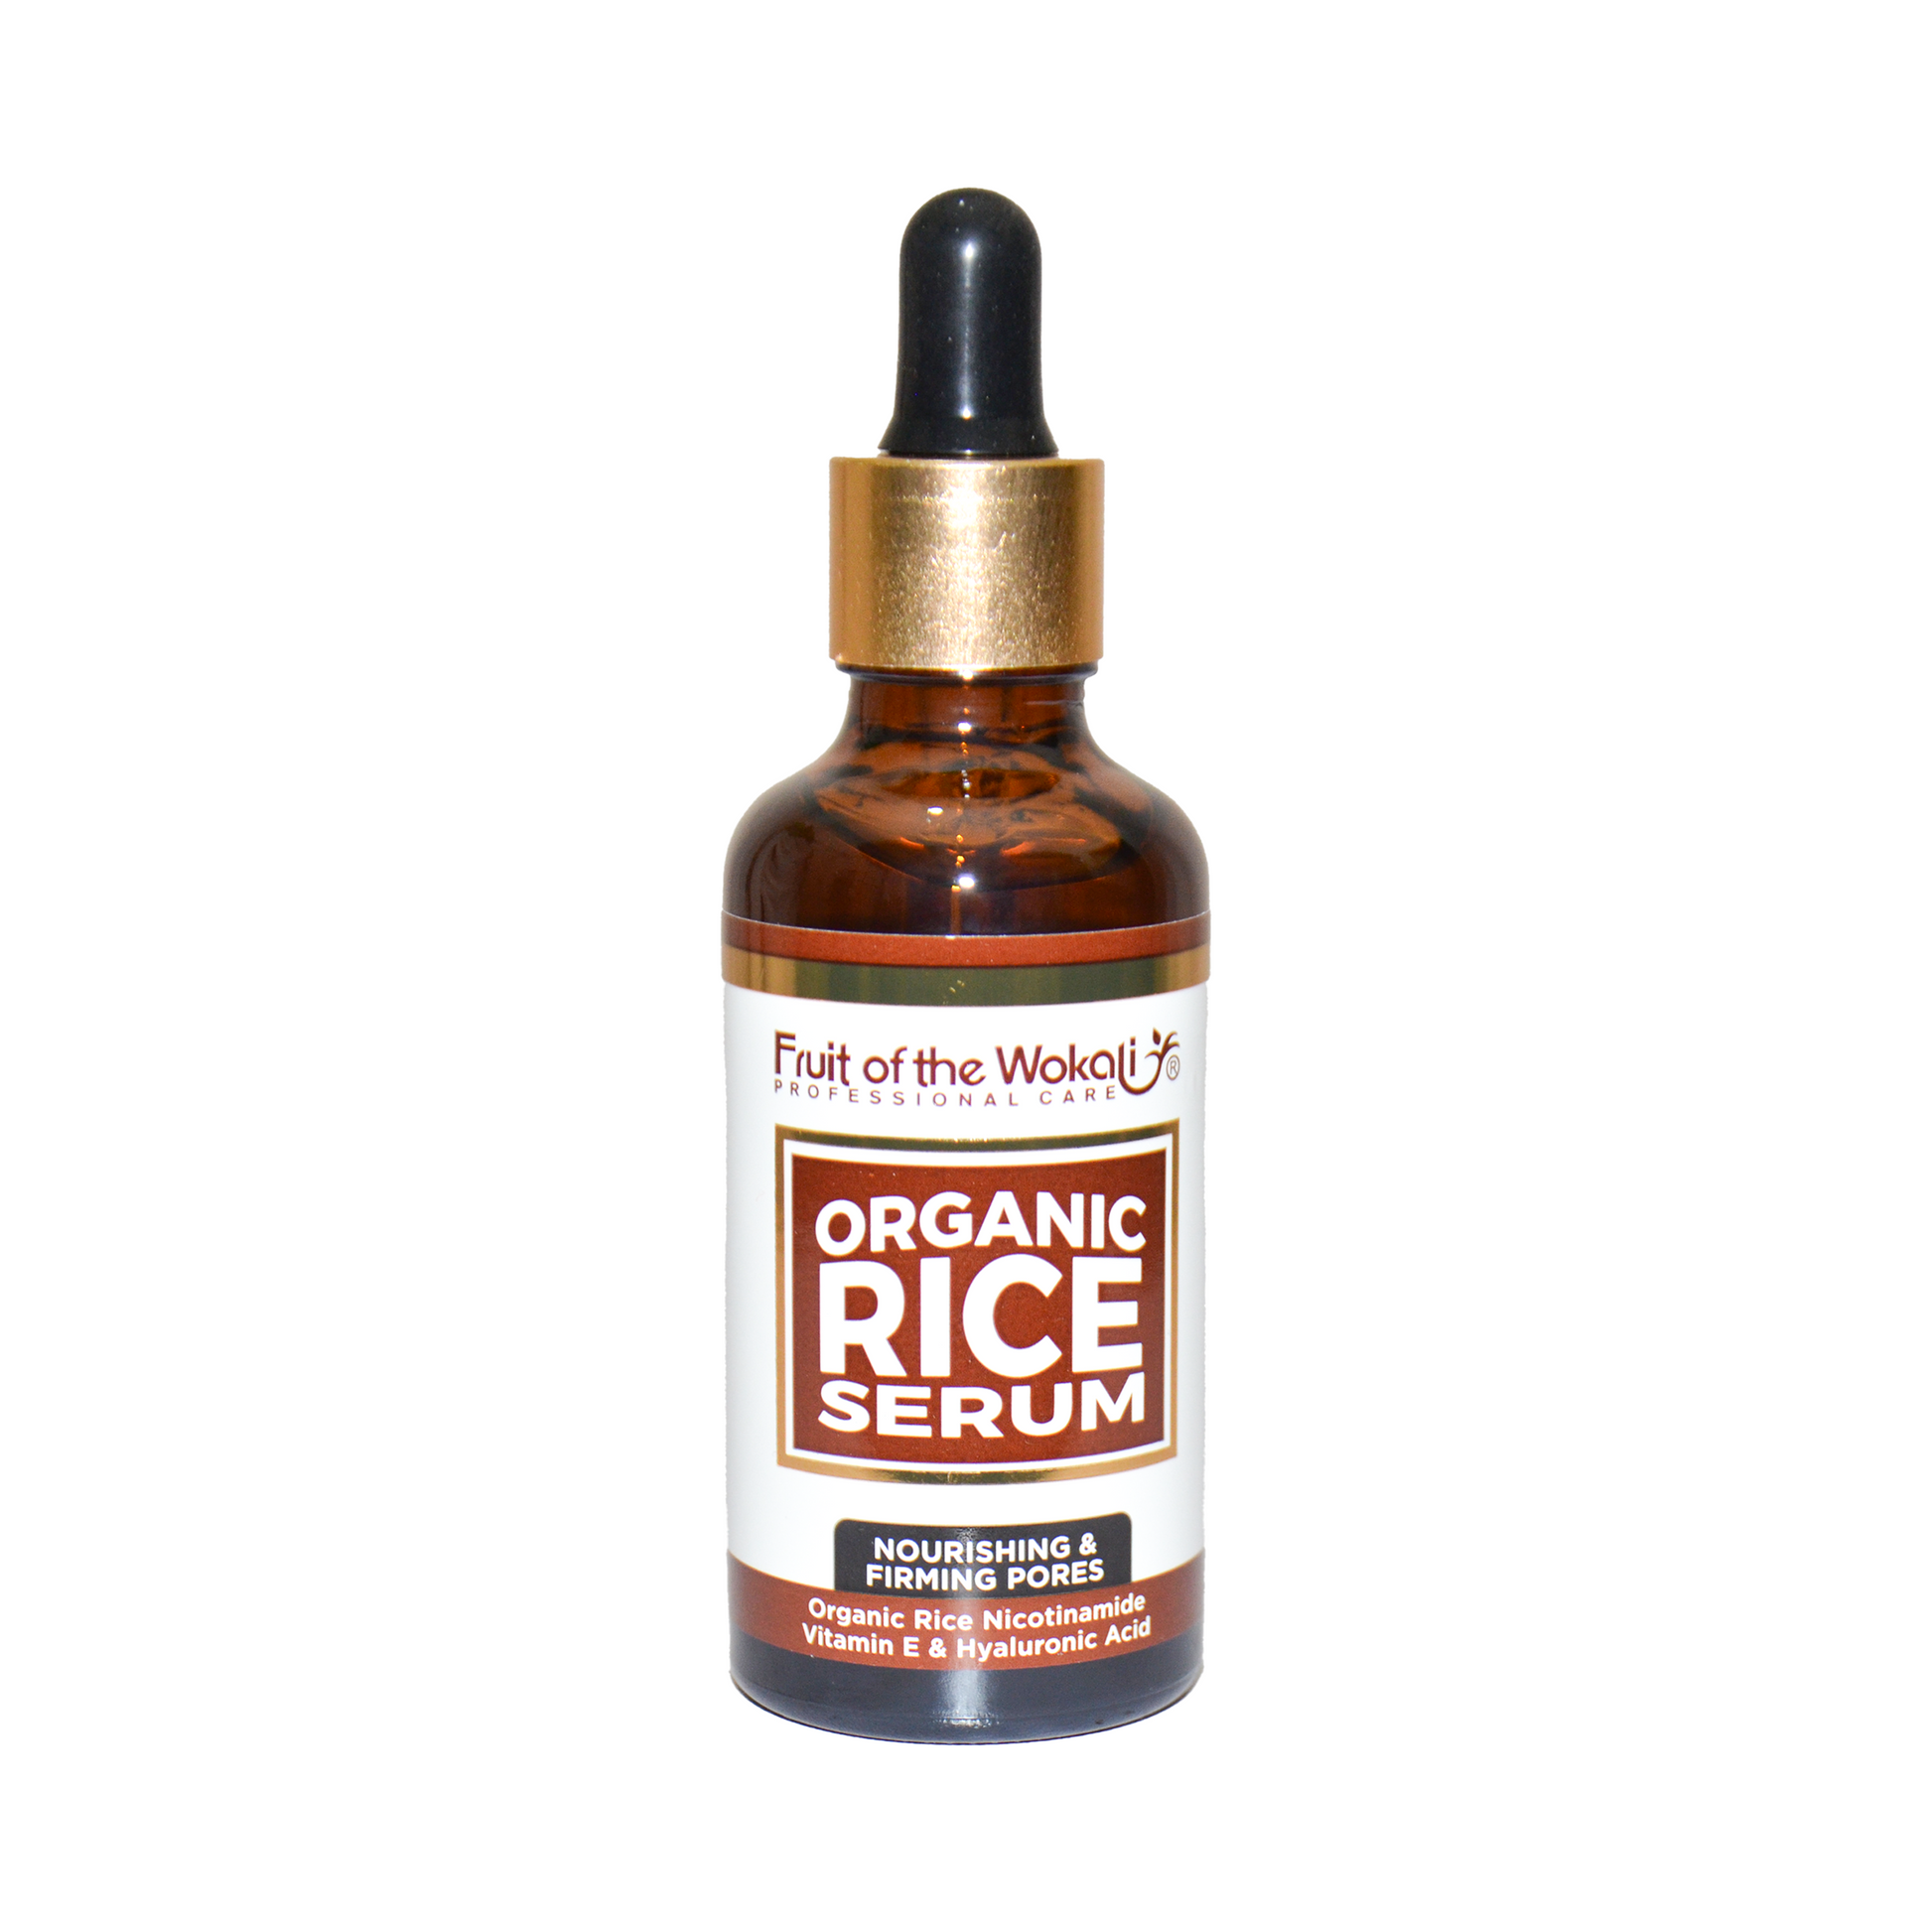 Rice Serum